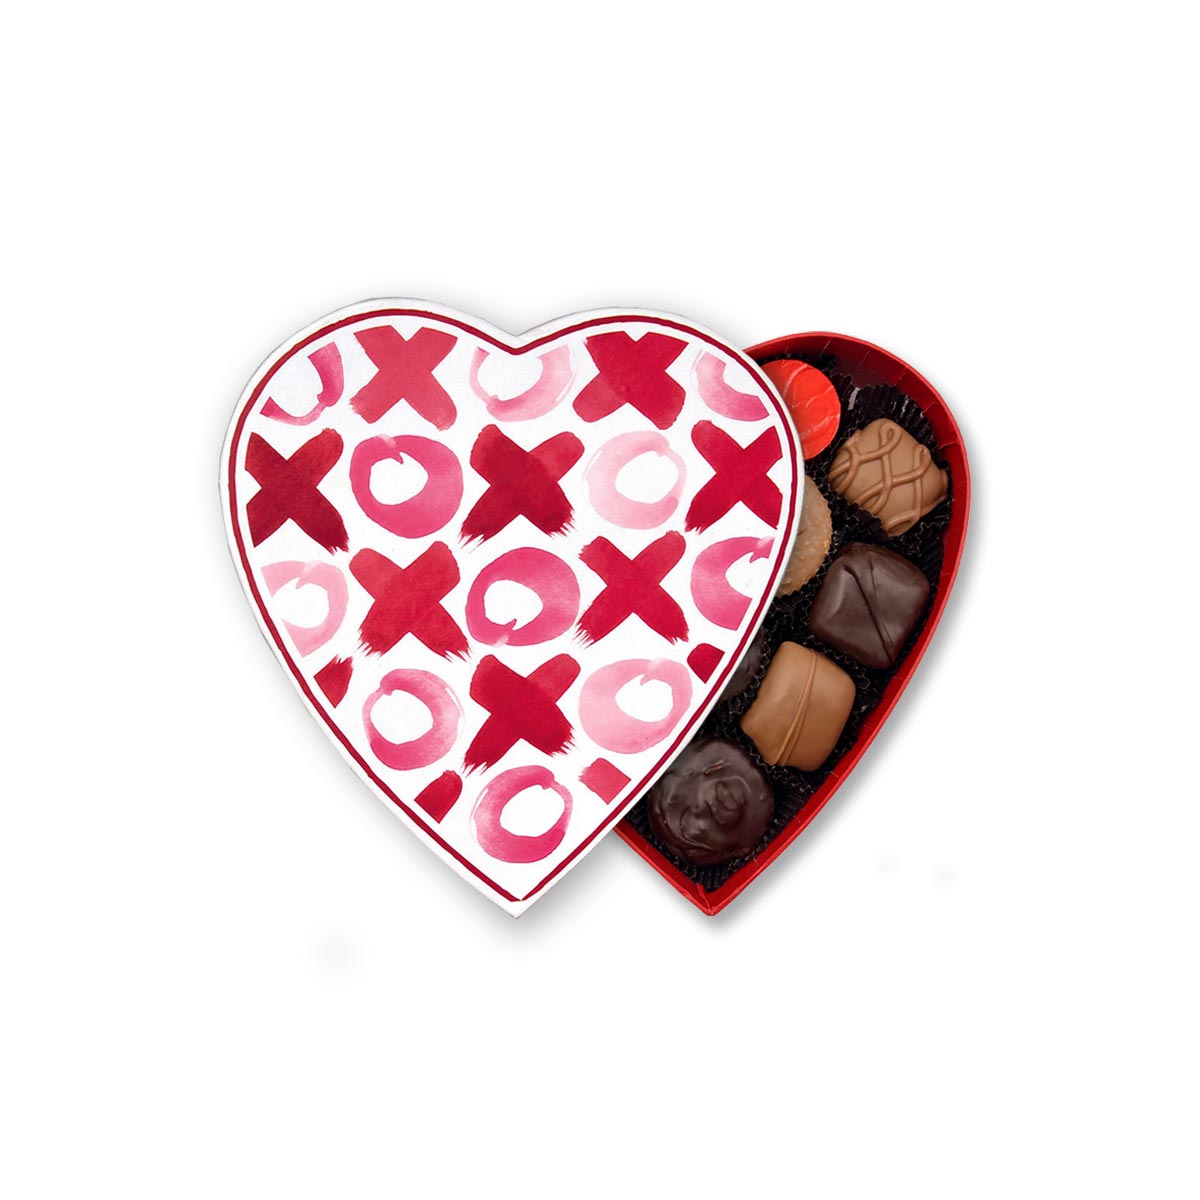 XOXO Heart Box